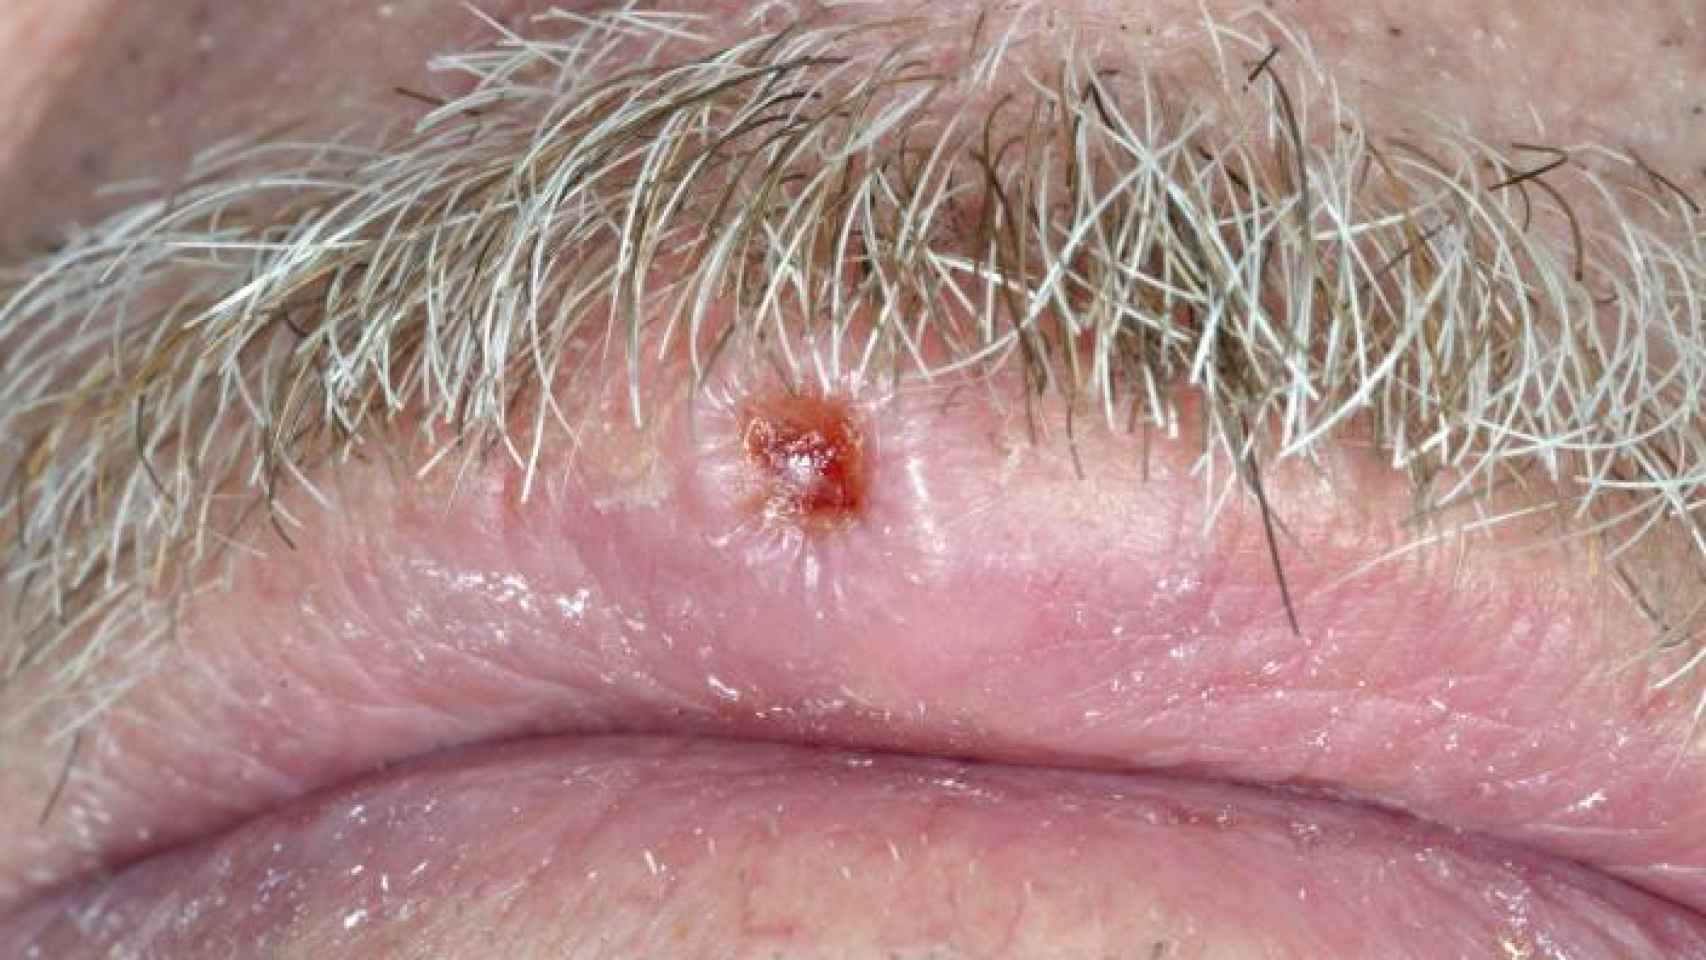 Carcinoma de células escamosas en el labio.